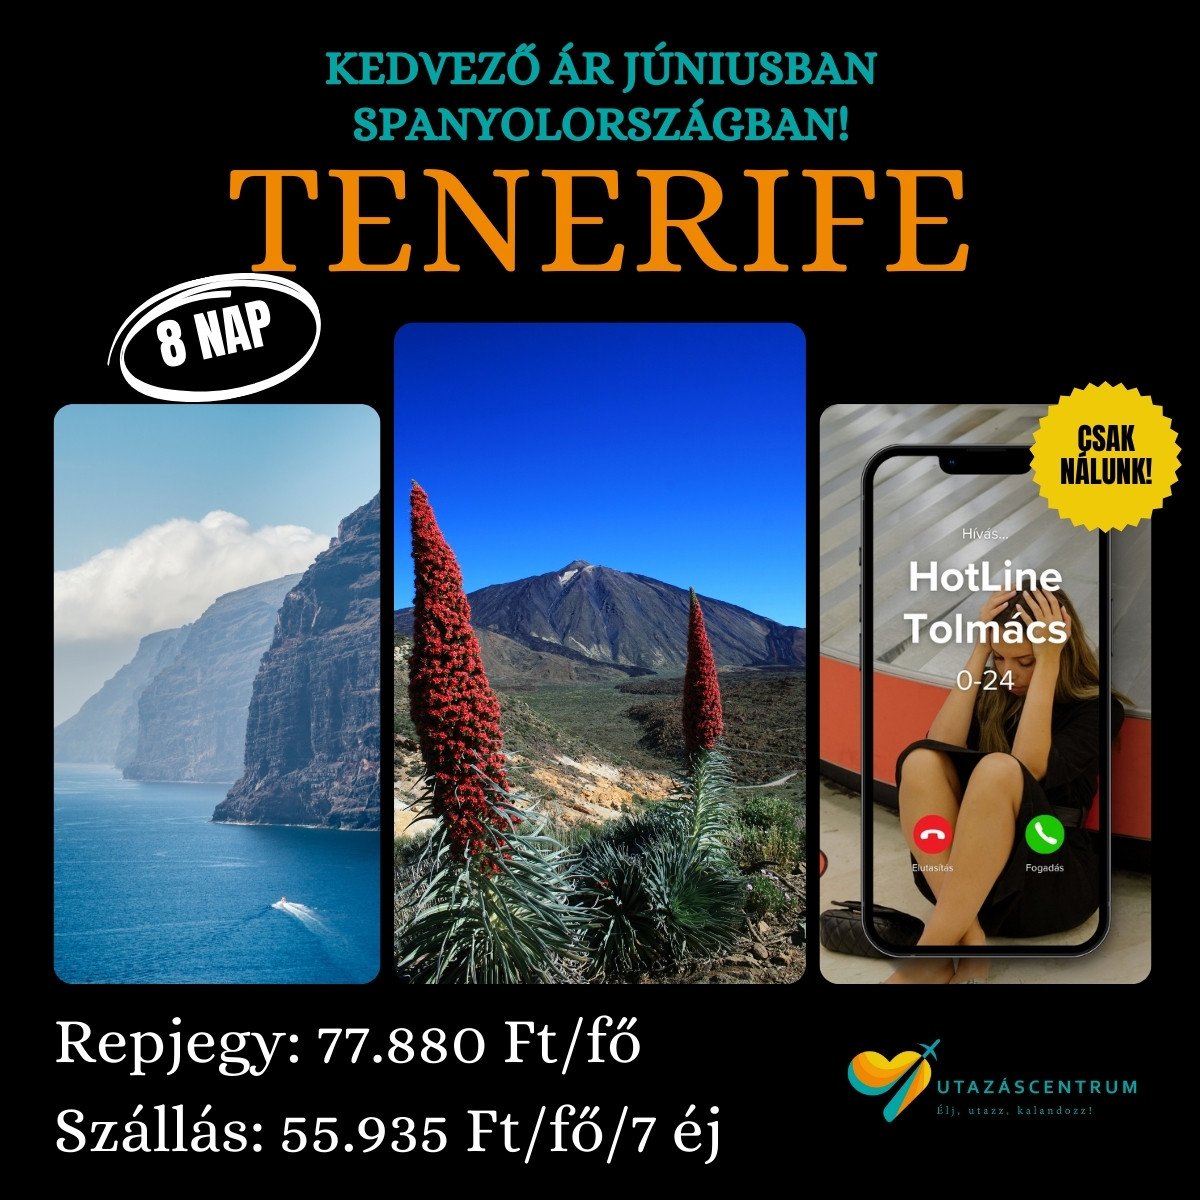 Tenerife Spanyolország utazás nyaralás üdülés utazáscentrum blog szállás